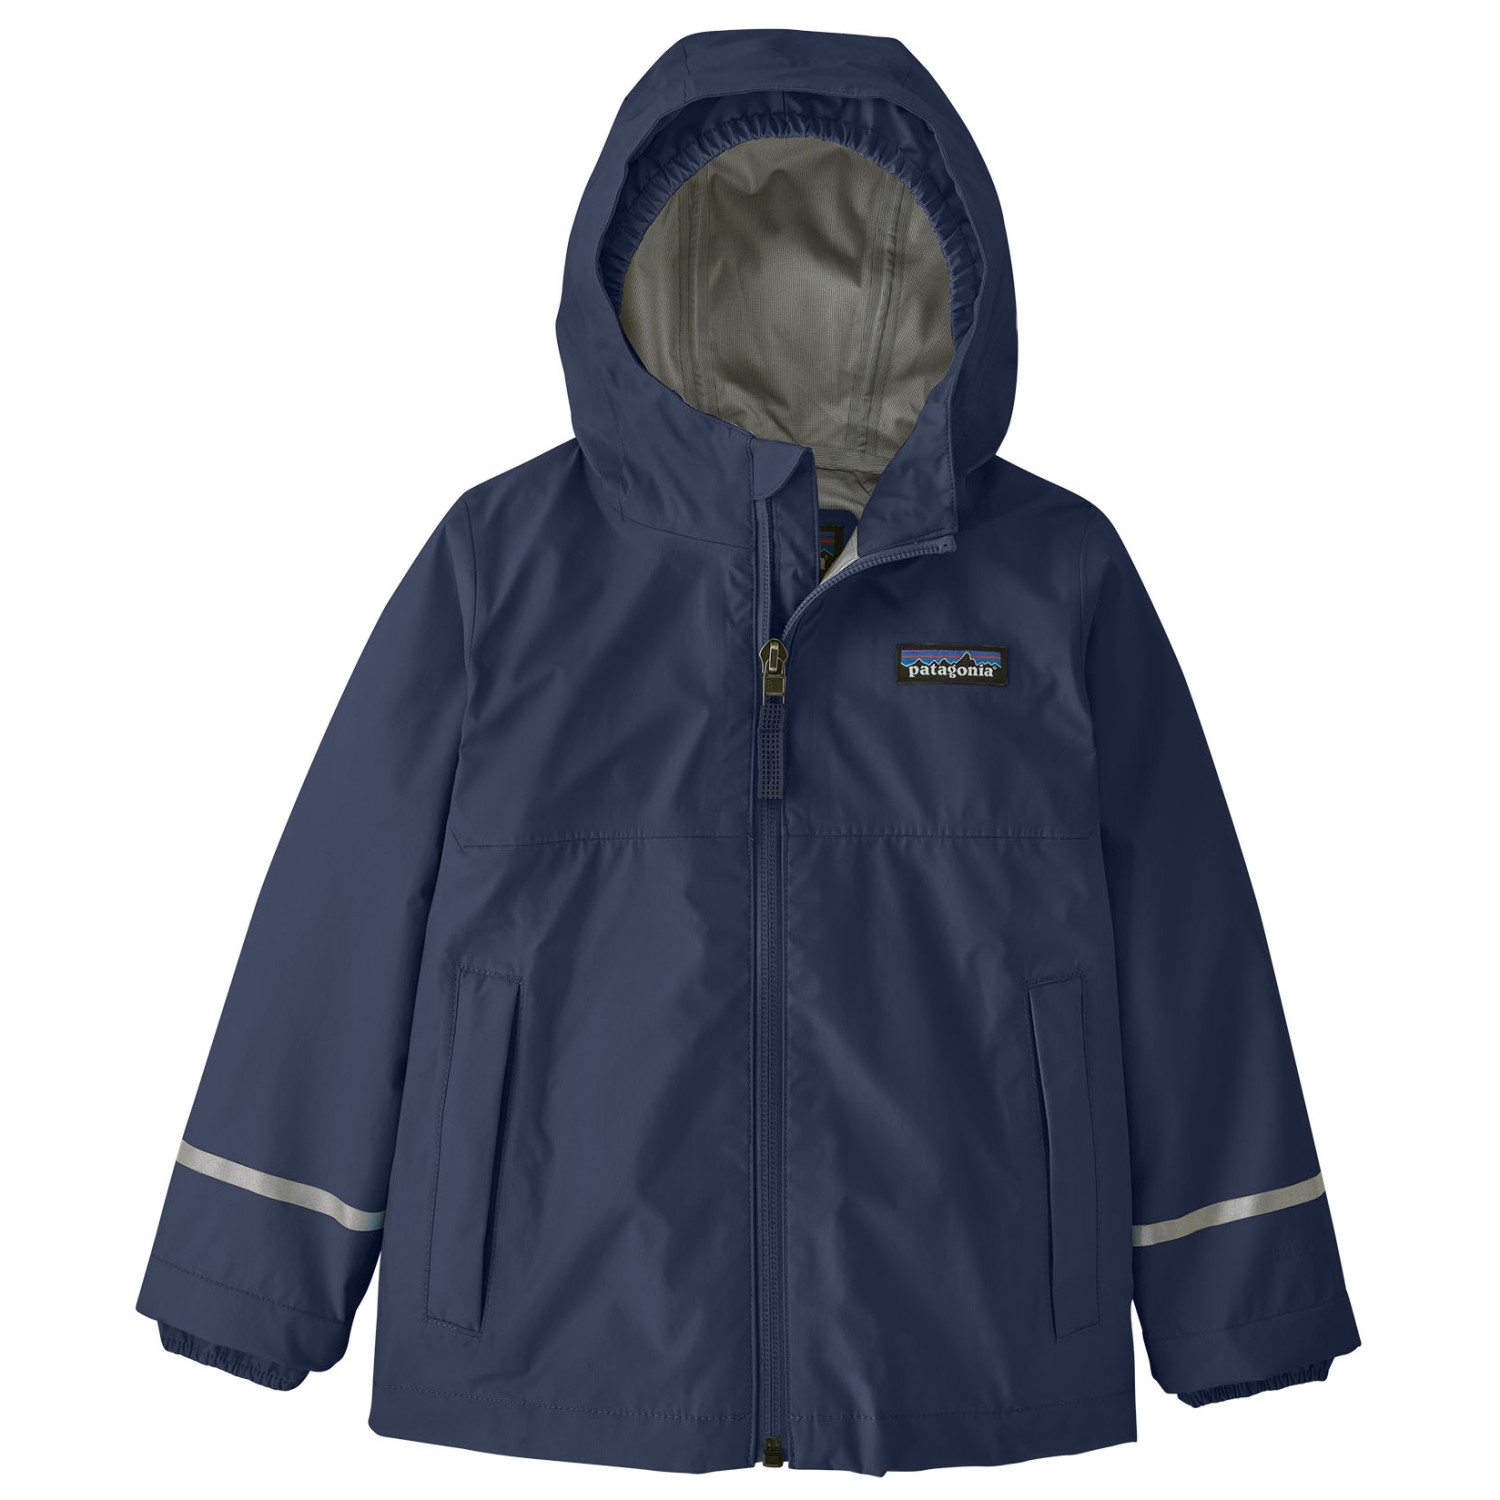 Дождевик Patagonia Baby's Torrentshell 3L, цвет New Navy куртка patagonia men s torrentshell 3l jacket s